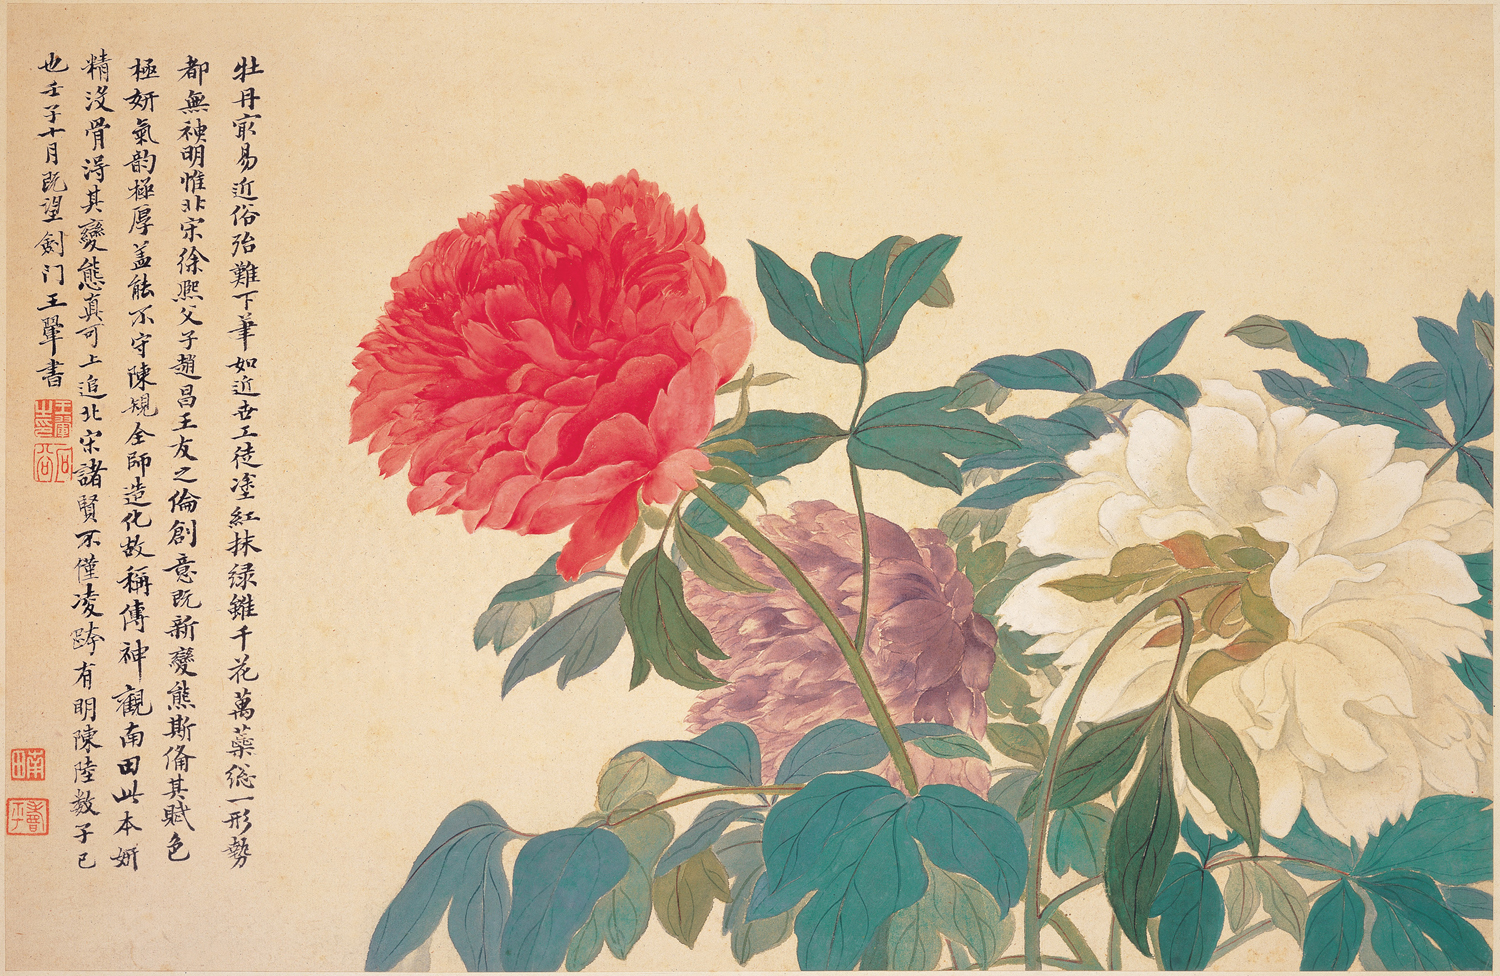 모란(Peonies) by Yun Shou-p'ing - 1672 - 28.5 x 43.0 cm 